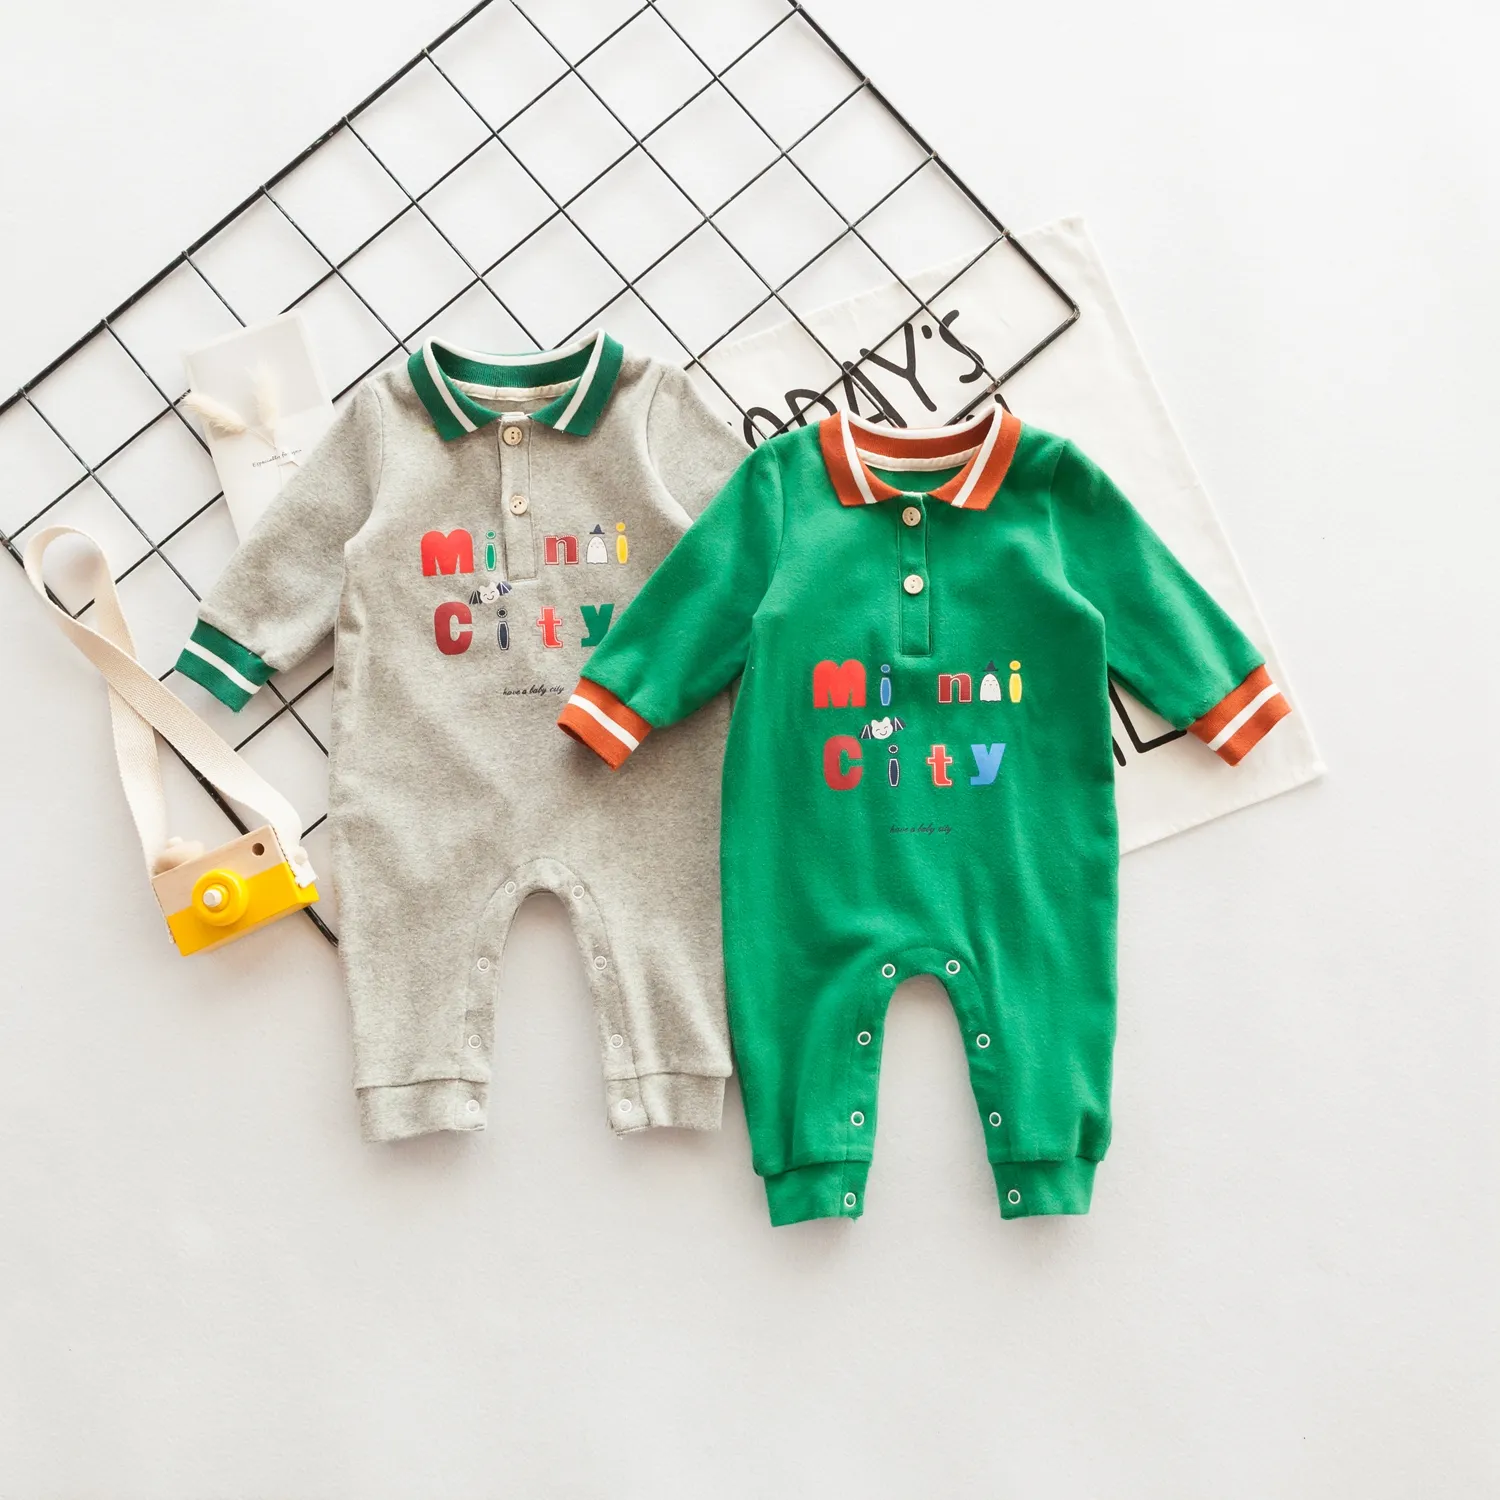 מוצרים חדשים מחפשים מפיץ בני ארוך בועת תינוק בגדי תינוק Rompers